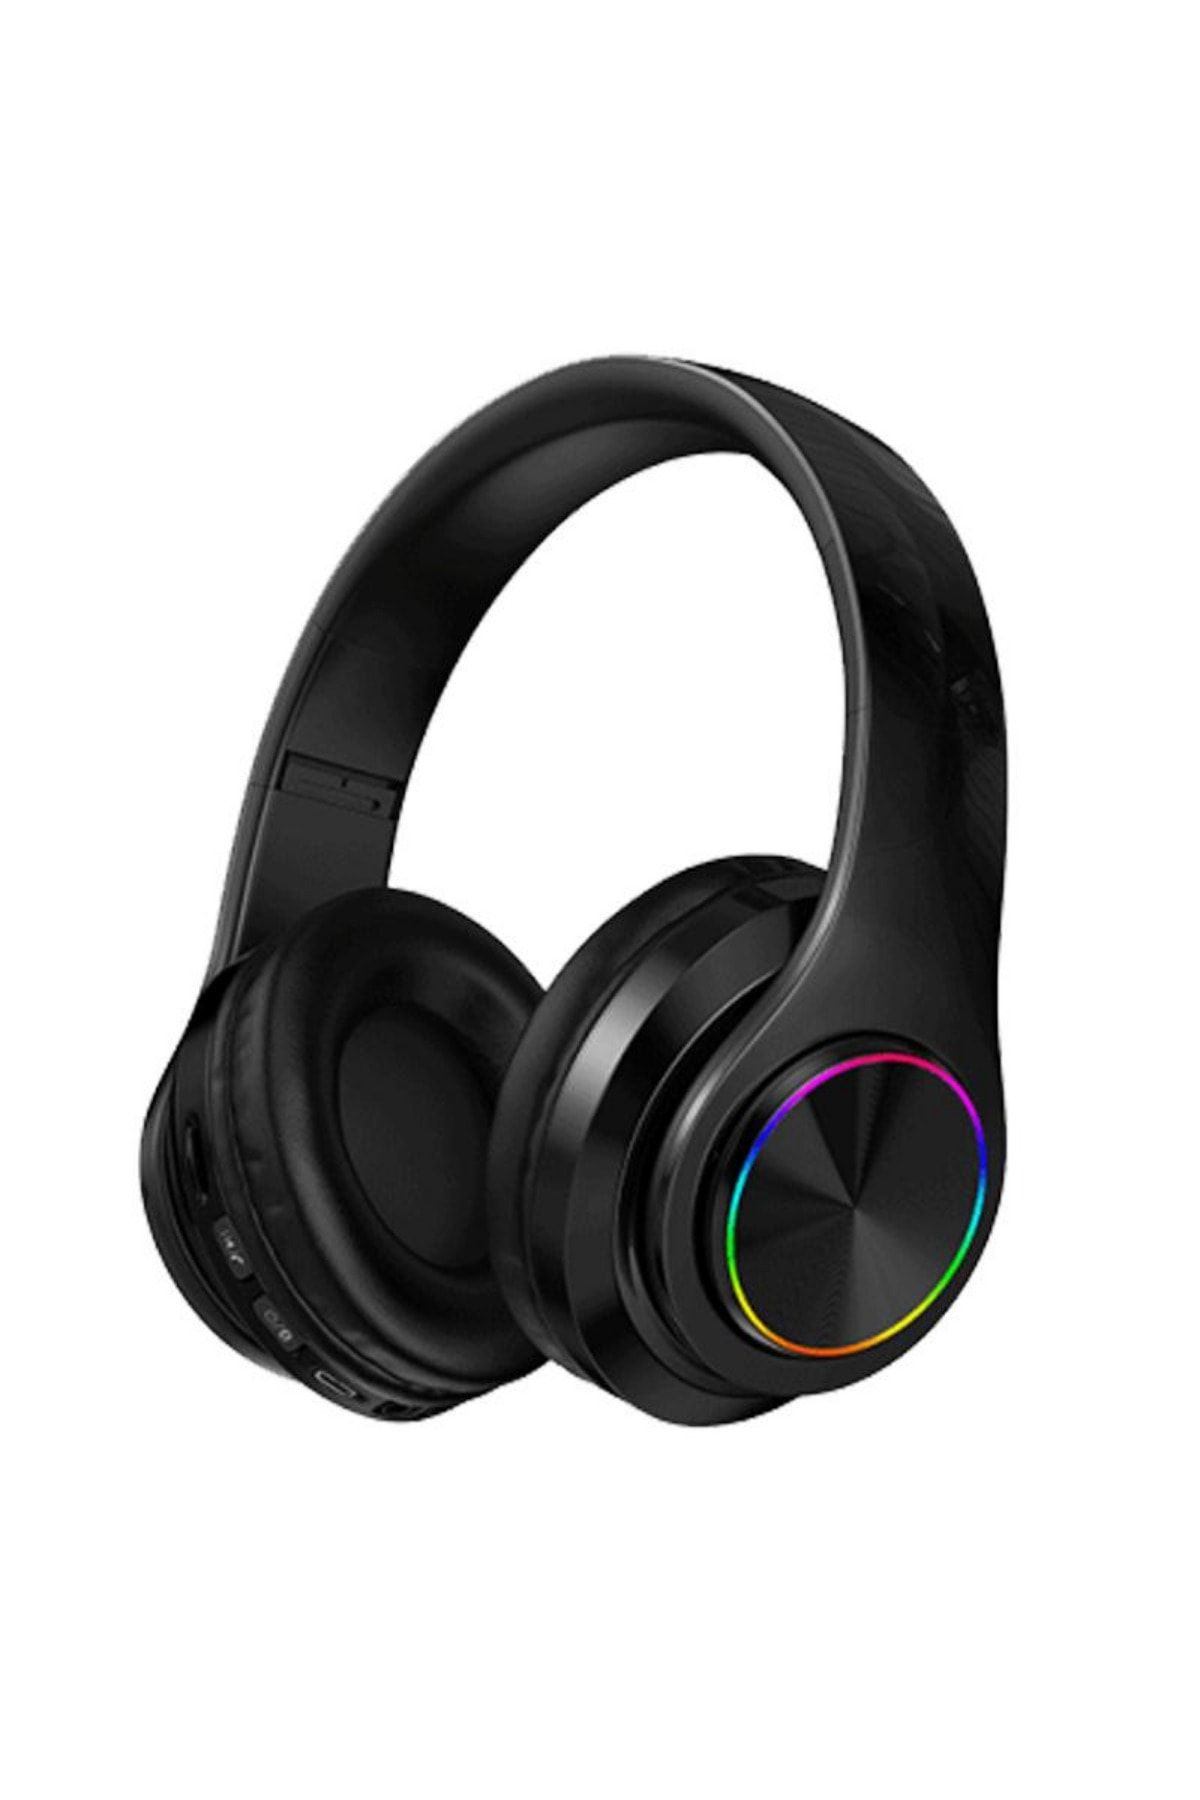 Teknoloji Gelsin Bluetooth Kulaklık Kablosuz Kulaküstü Işıklı Katlanabilir Mikrofonlu Fm-aux-sd Siyah